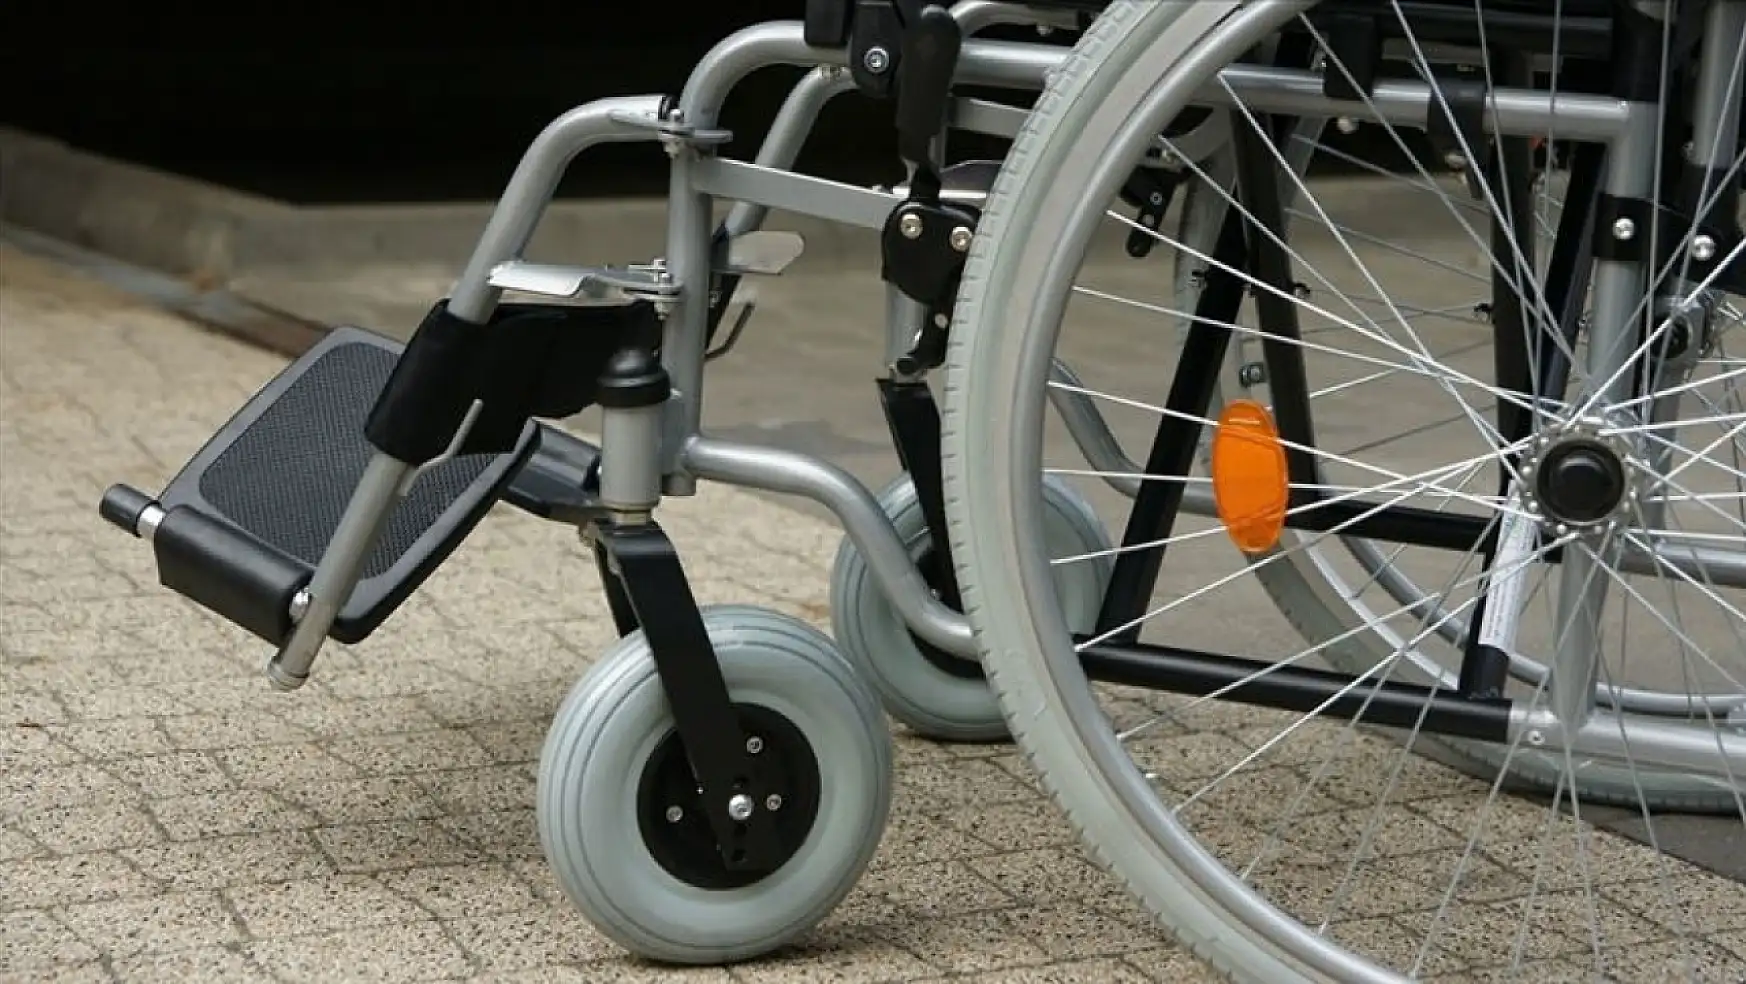 O ülkede tekerlekli sandalyeler ücretsiz olacak